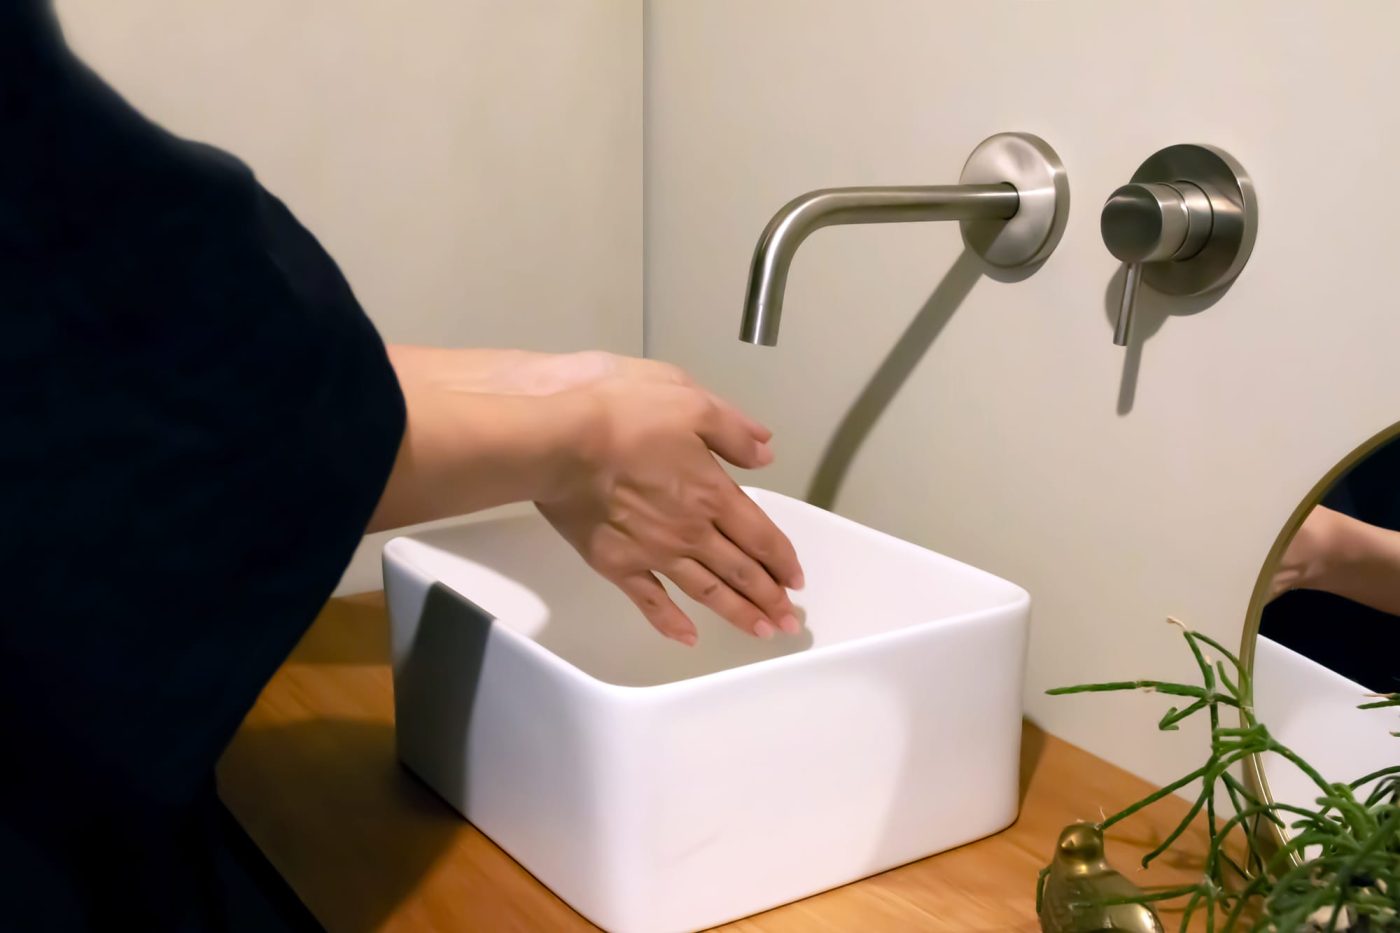 「壁付けセパレート混合水栓」の下にコンパクトな角240を添えて。ちょっと手を洗うのに適した小ぶりなサイズ感です。
